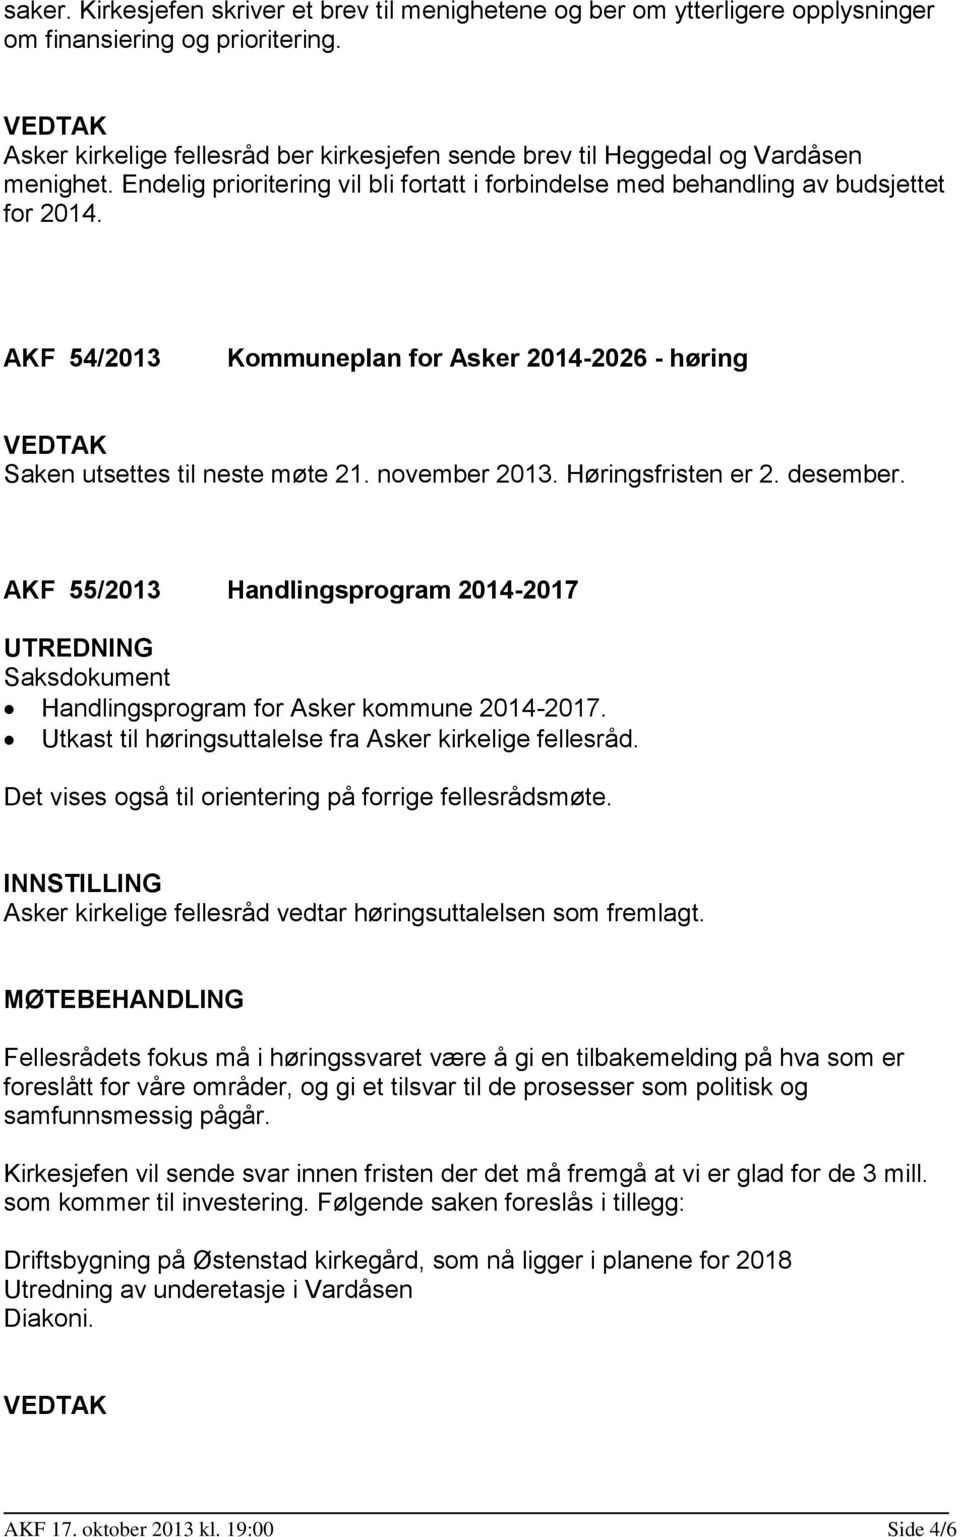 AKF 54/2013 Kommuneplan for Asker 2014-2026 - høring Saken utsettes til neste møte 21. november 2013. Høringsfristen er 2. desember.